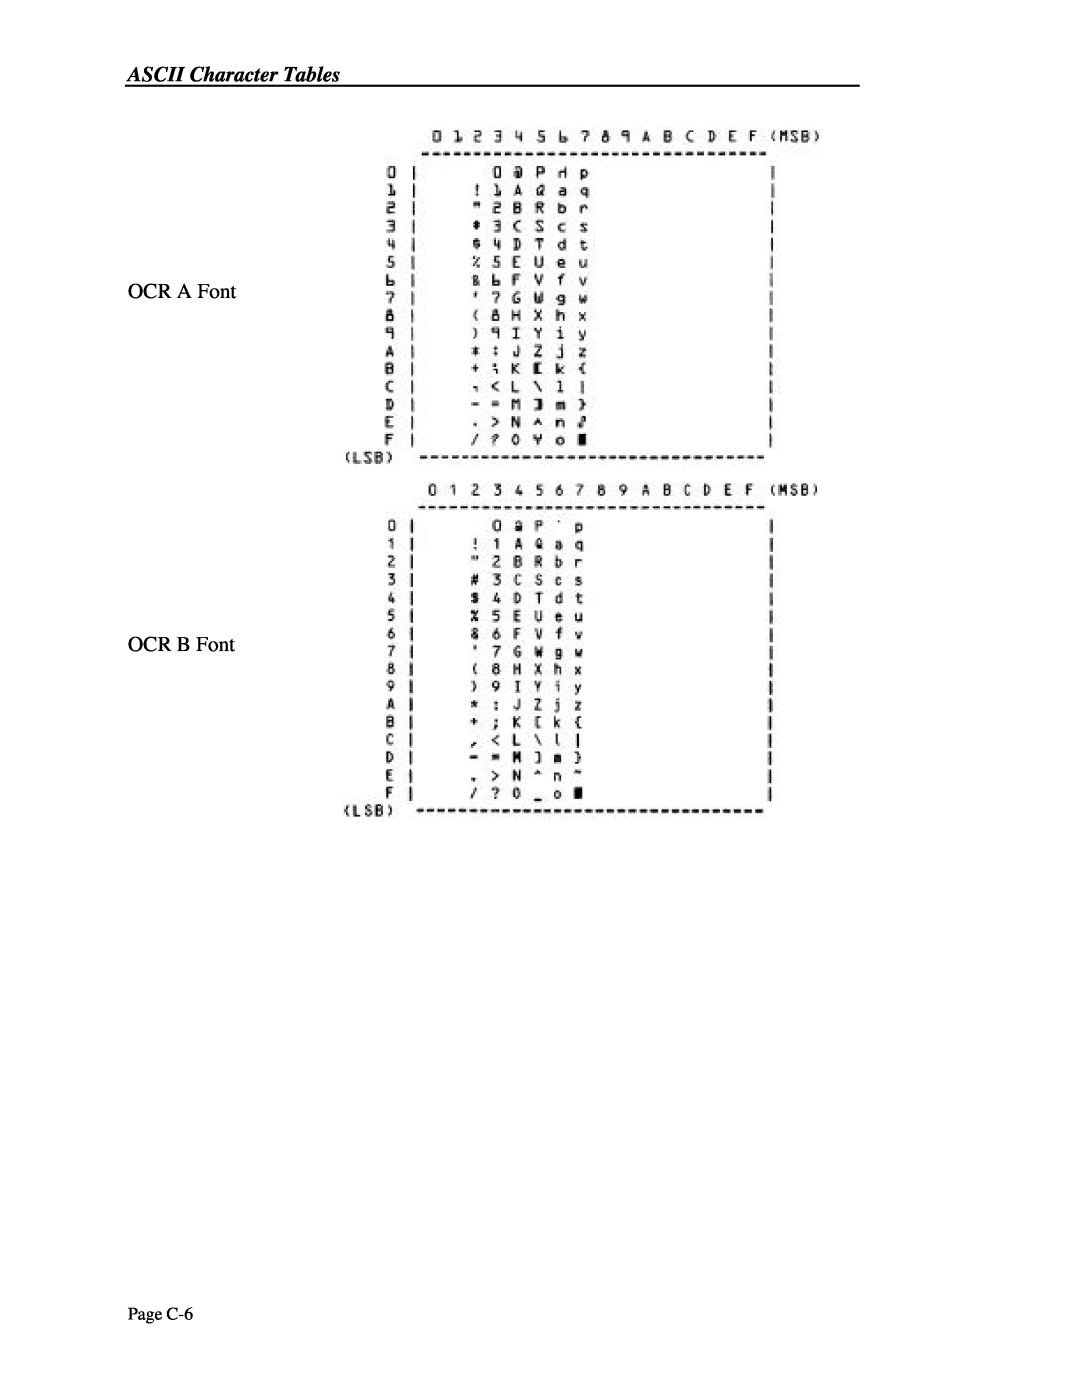 Printek 4300, 4503, 4500 manual OCR A Font OCR B Font, Page C-6 